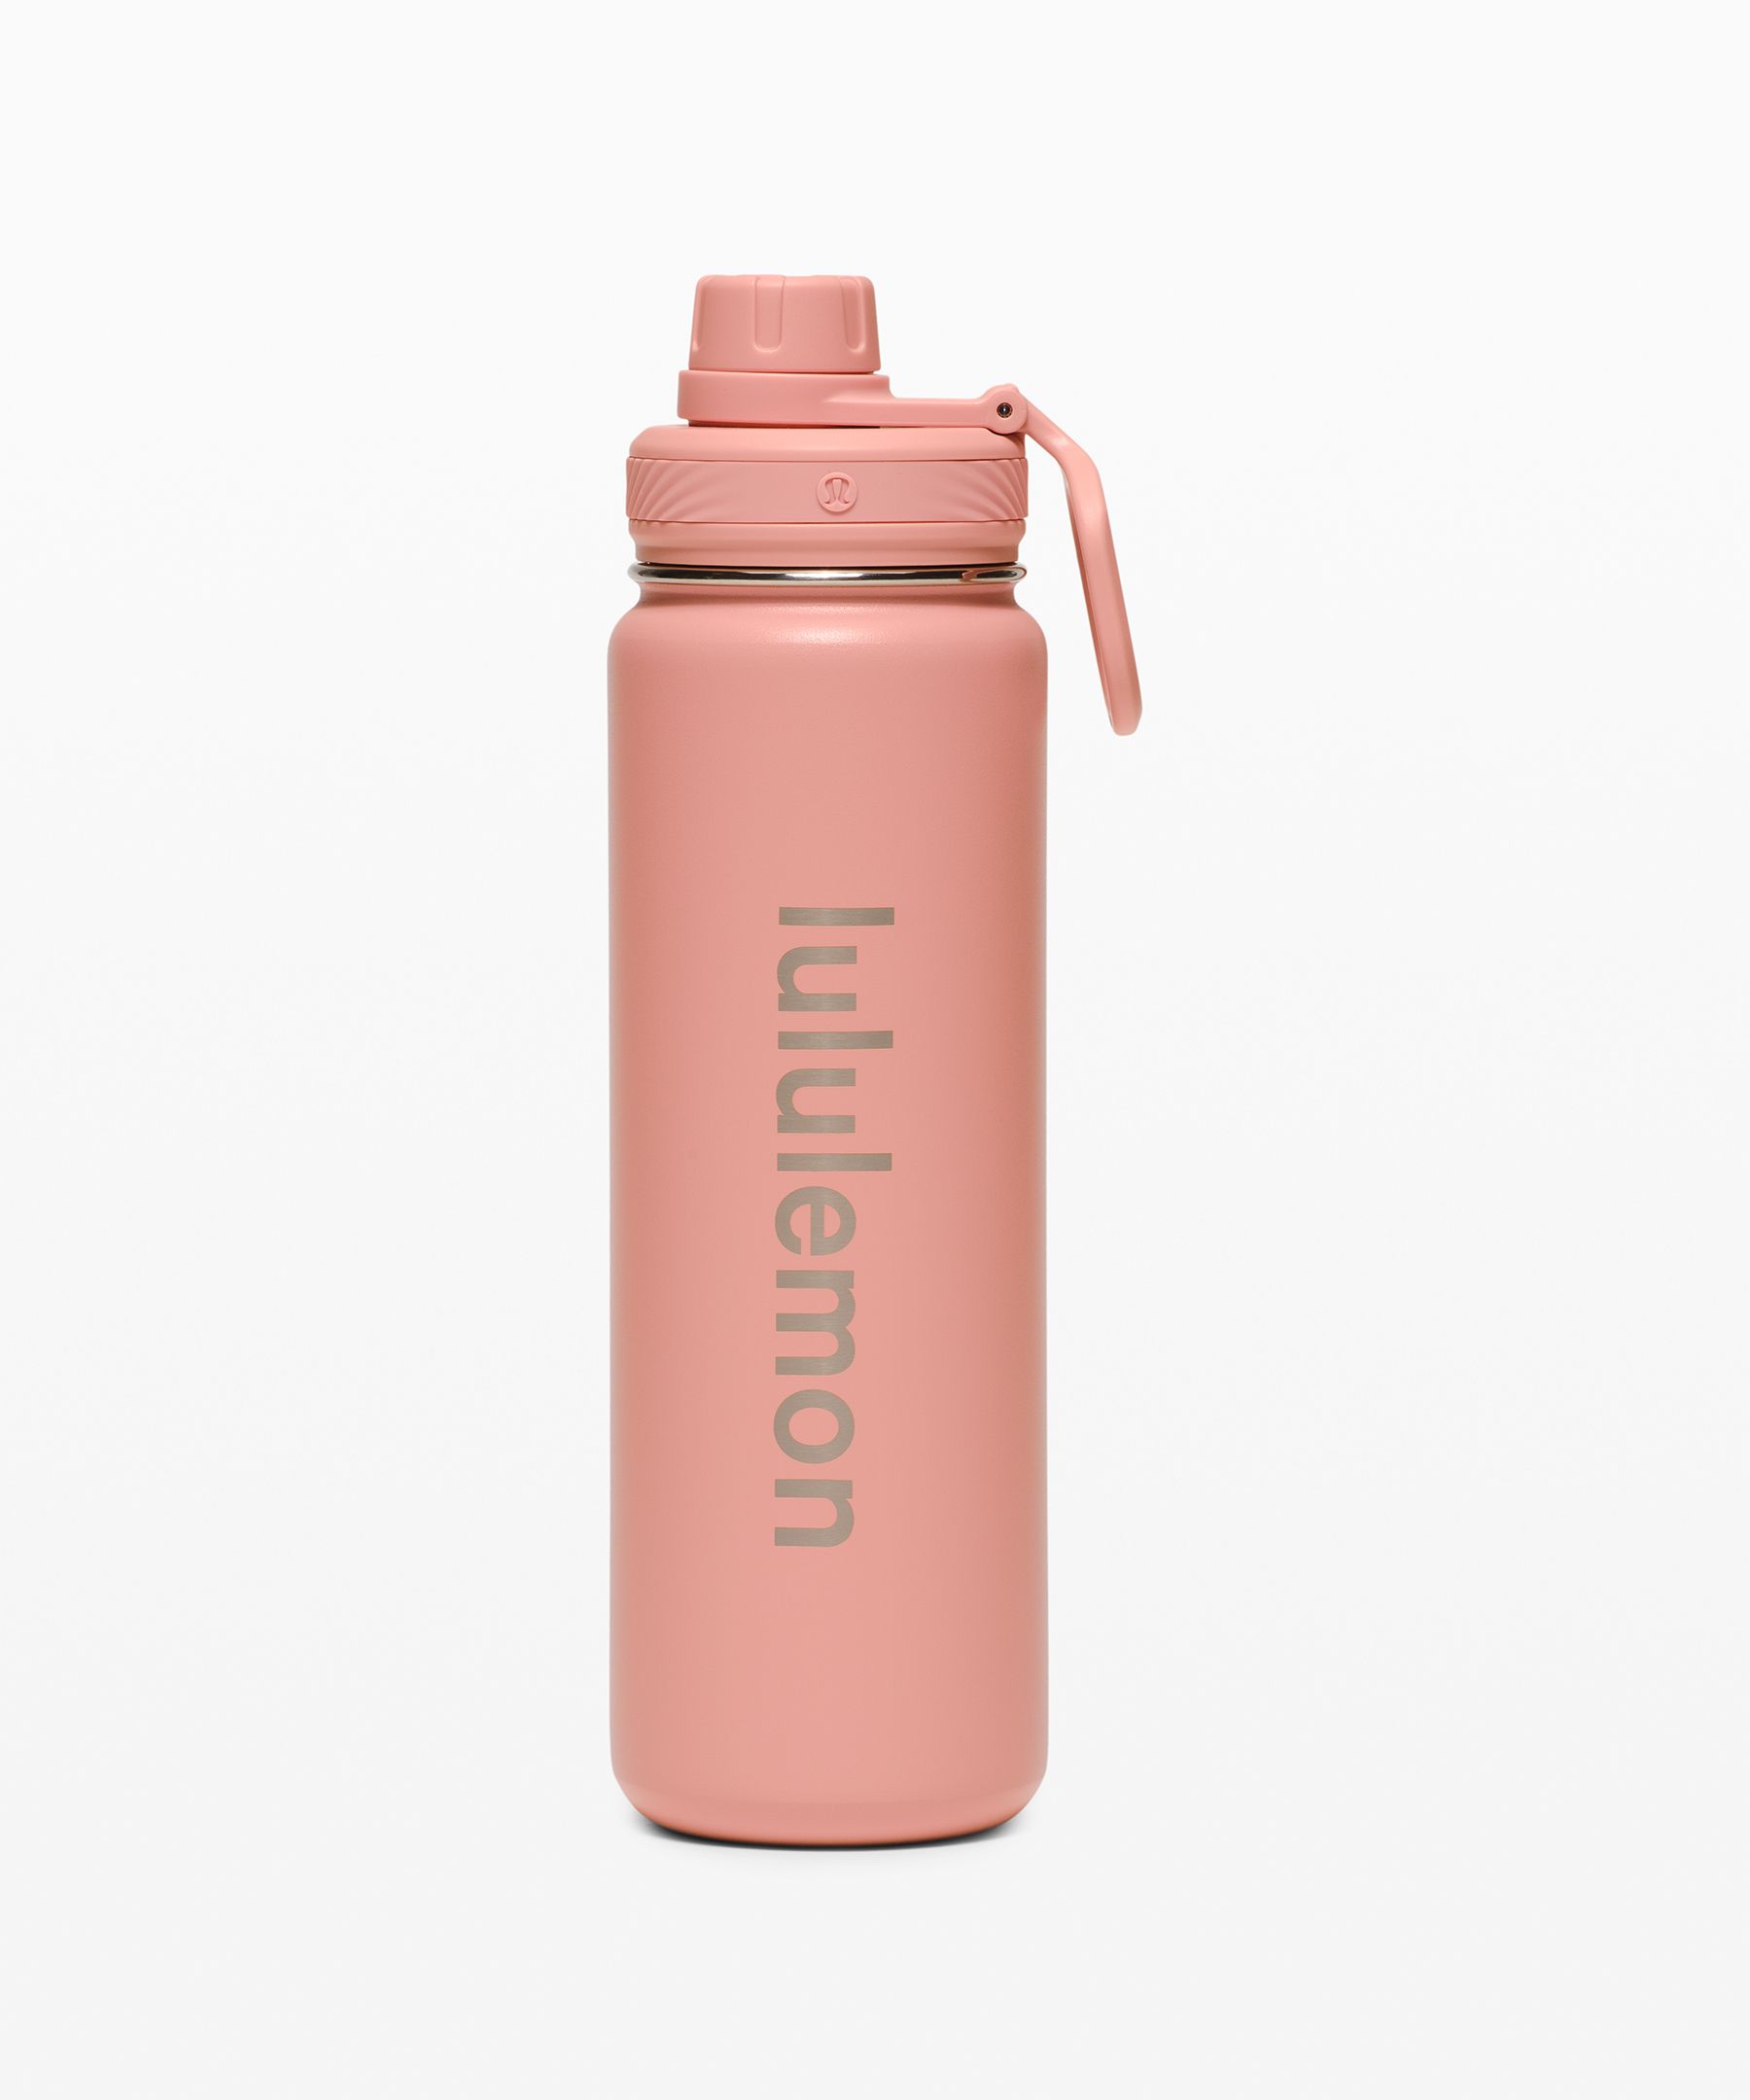 Lululemon Back To Life Sport Bottle 24oz In Pink Pastel